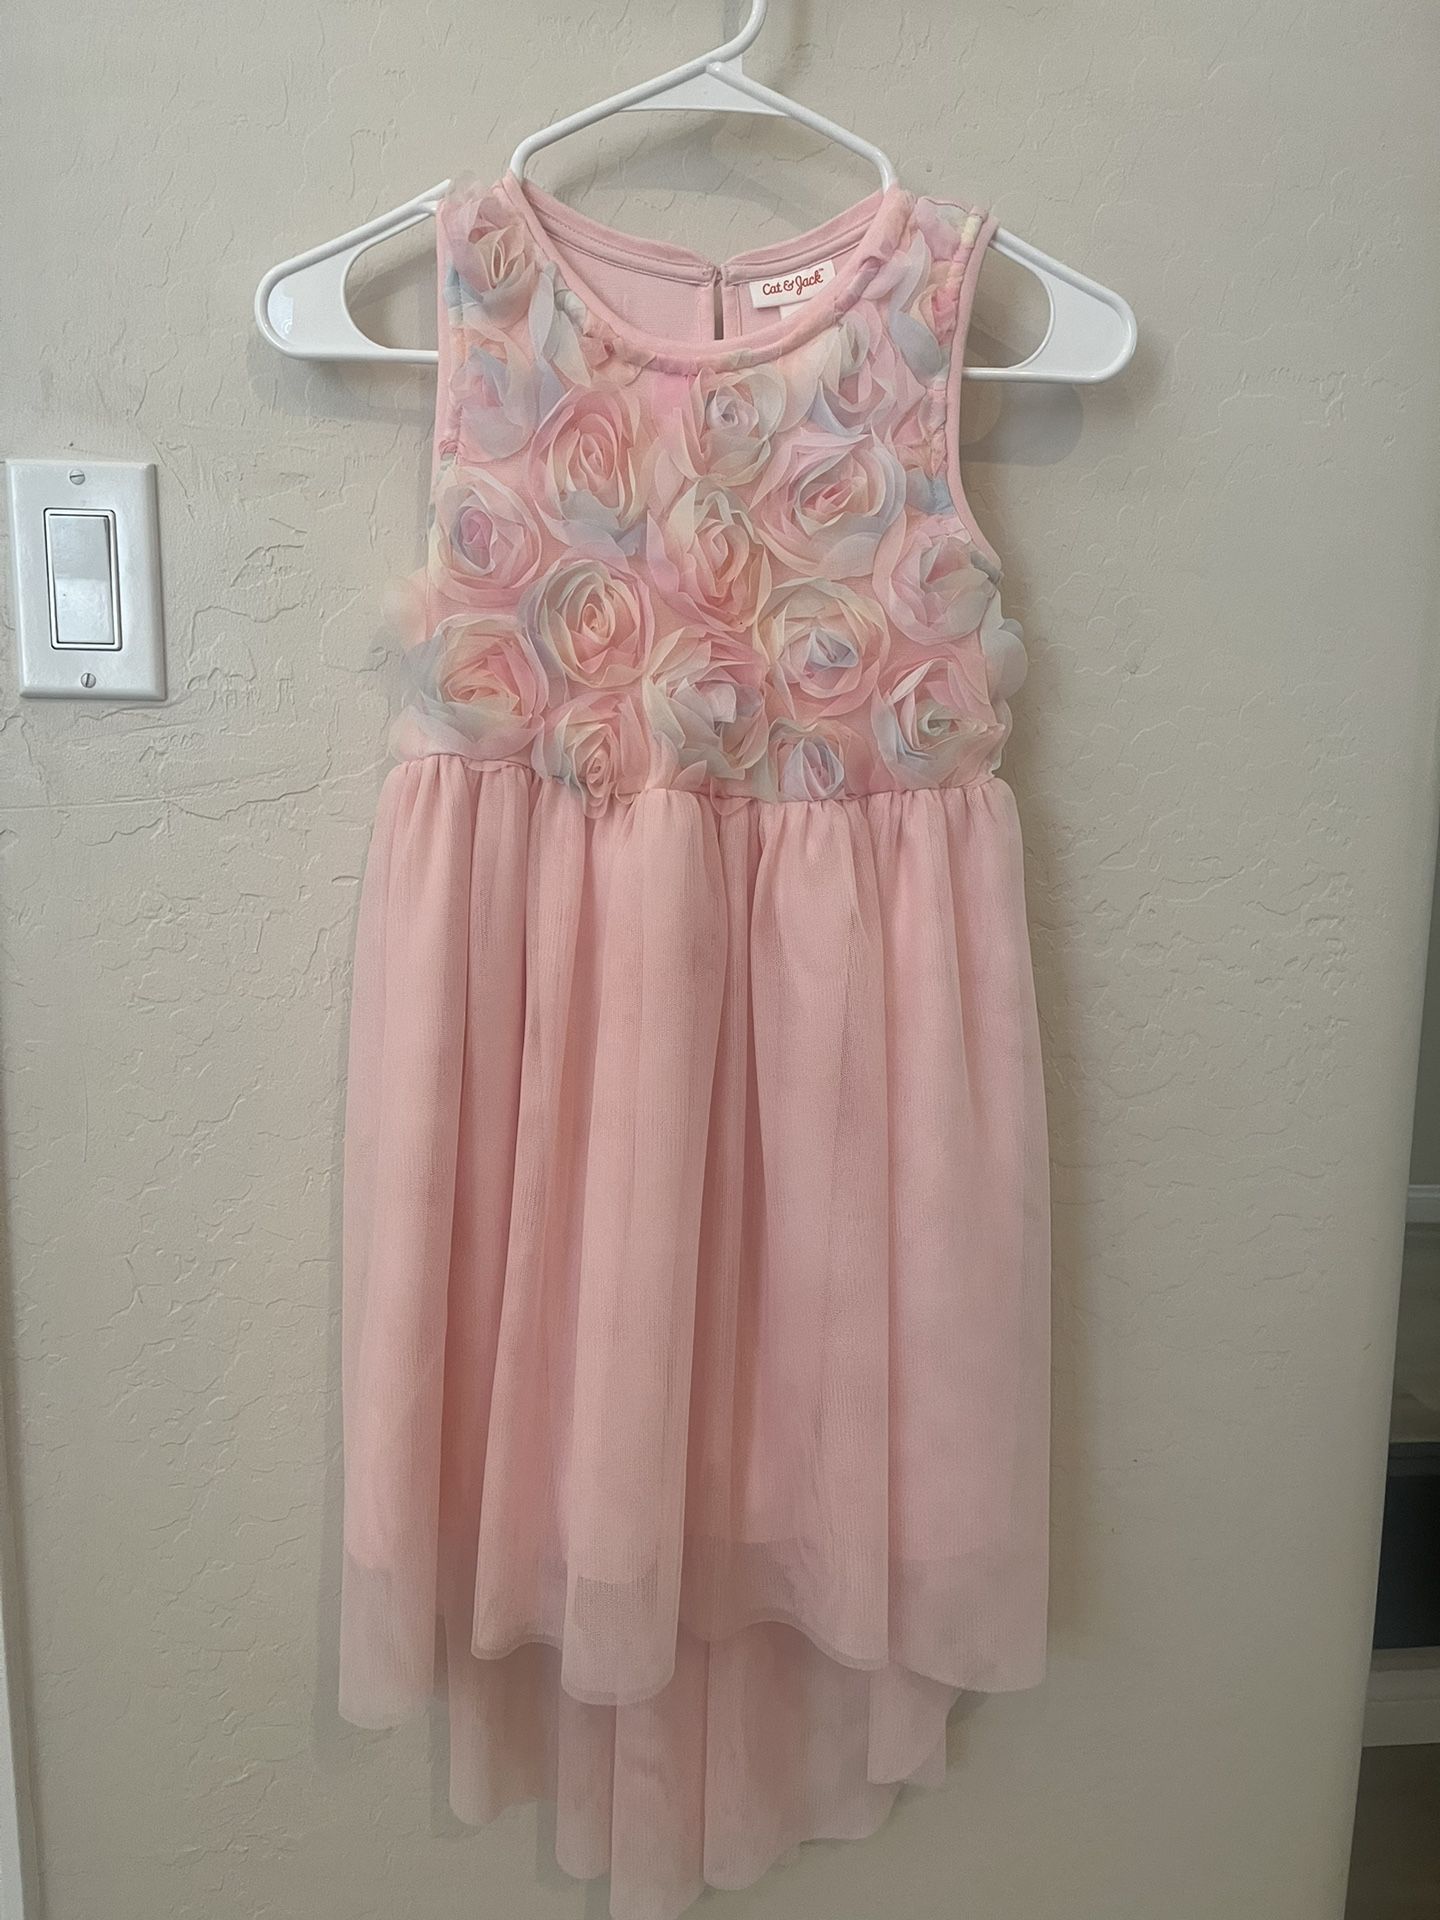 Spring Flower Girl Dress Size 7/8